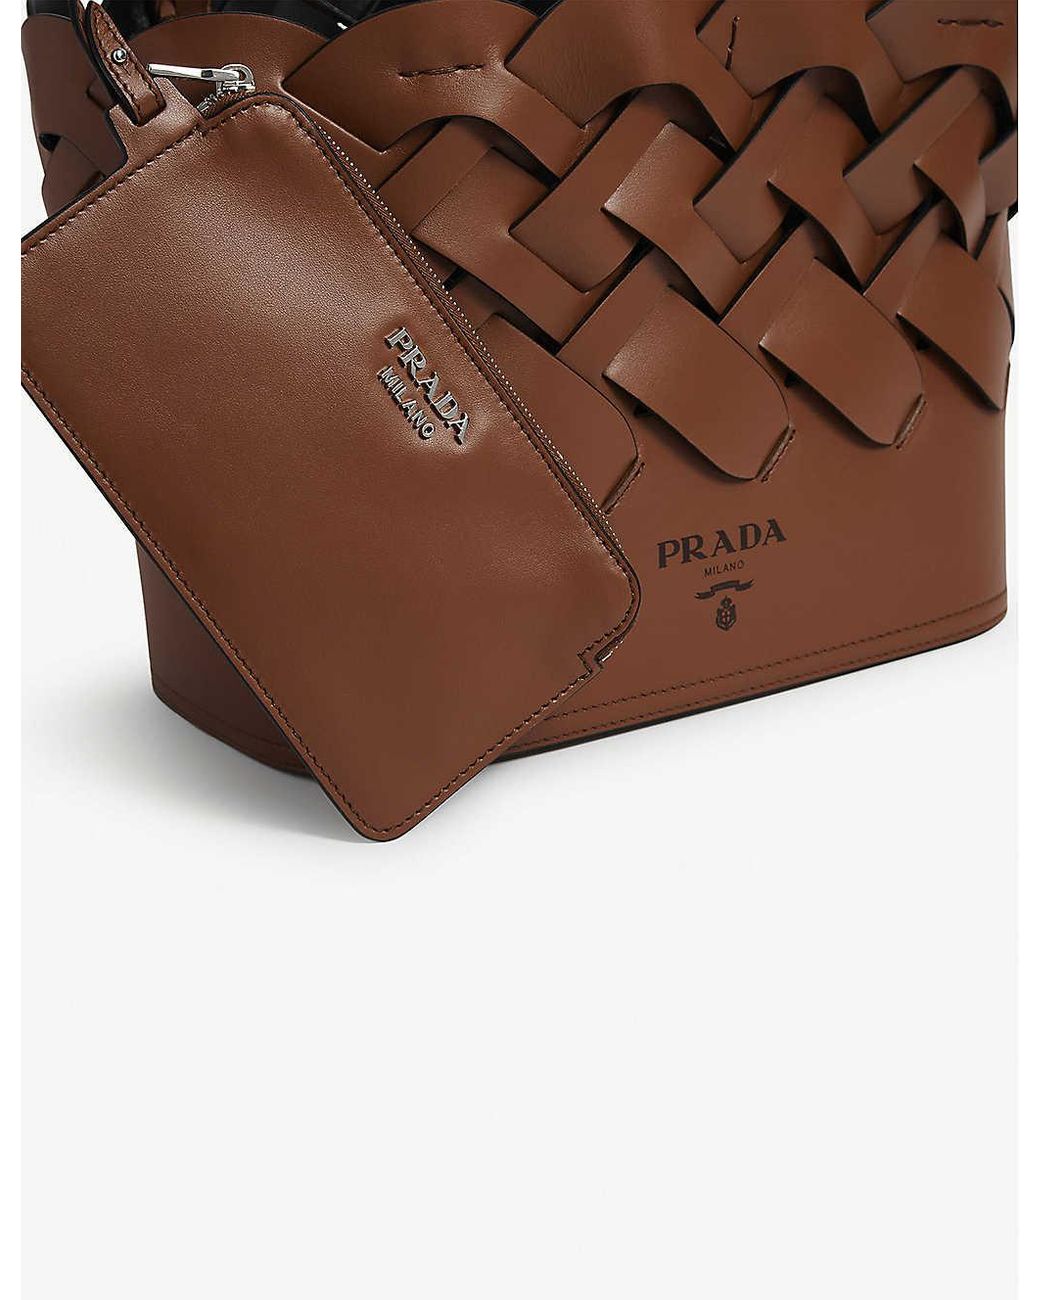 Prada Vitello Intreccio Leather Tote Bag in Brown | Lyst